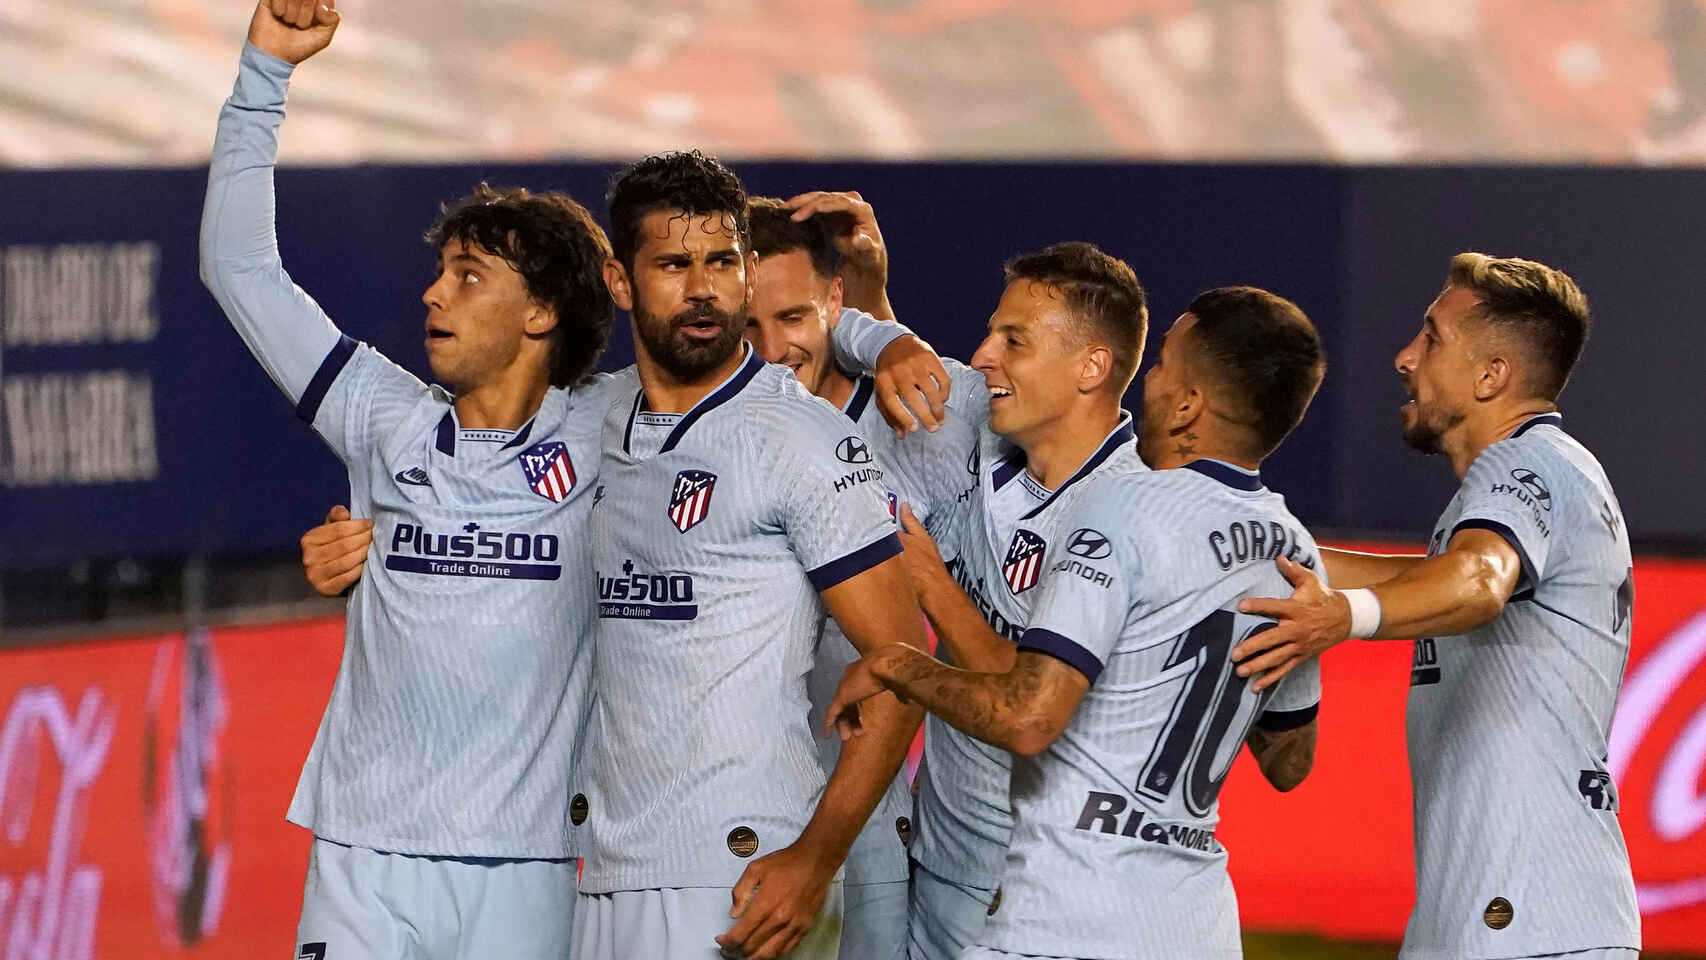 El Atlético, con Ángel Correa en cancha, goleó a Osasuna por 5-0  y accedió al cuarto lugar de la tabla.